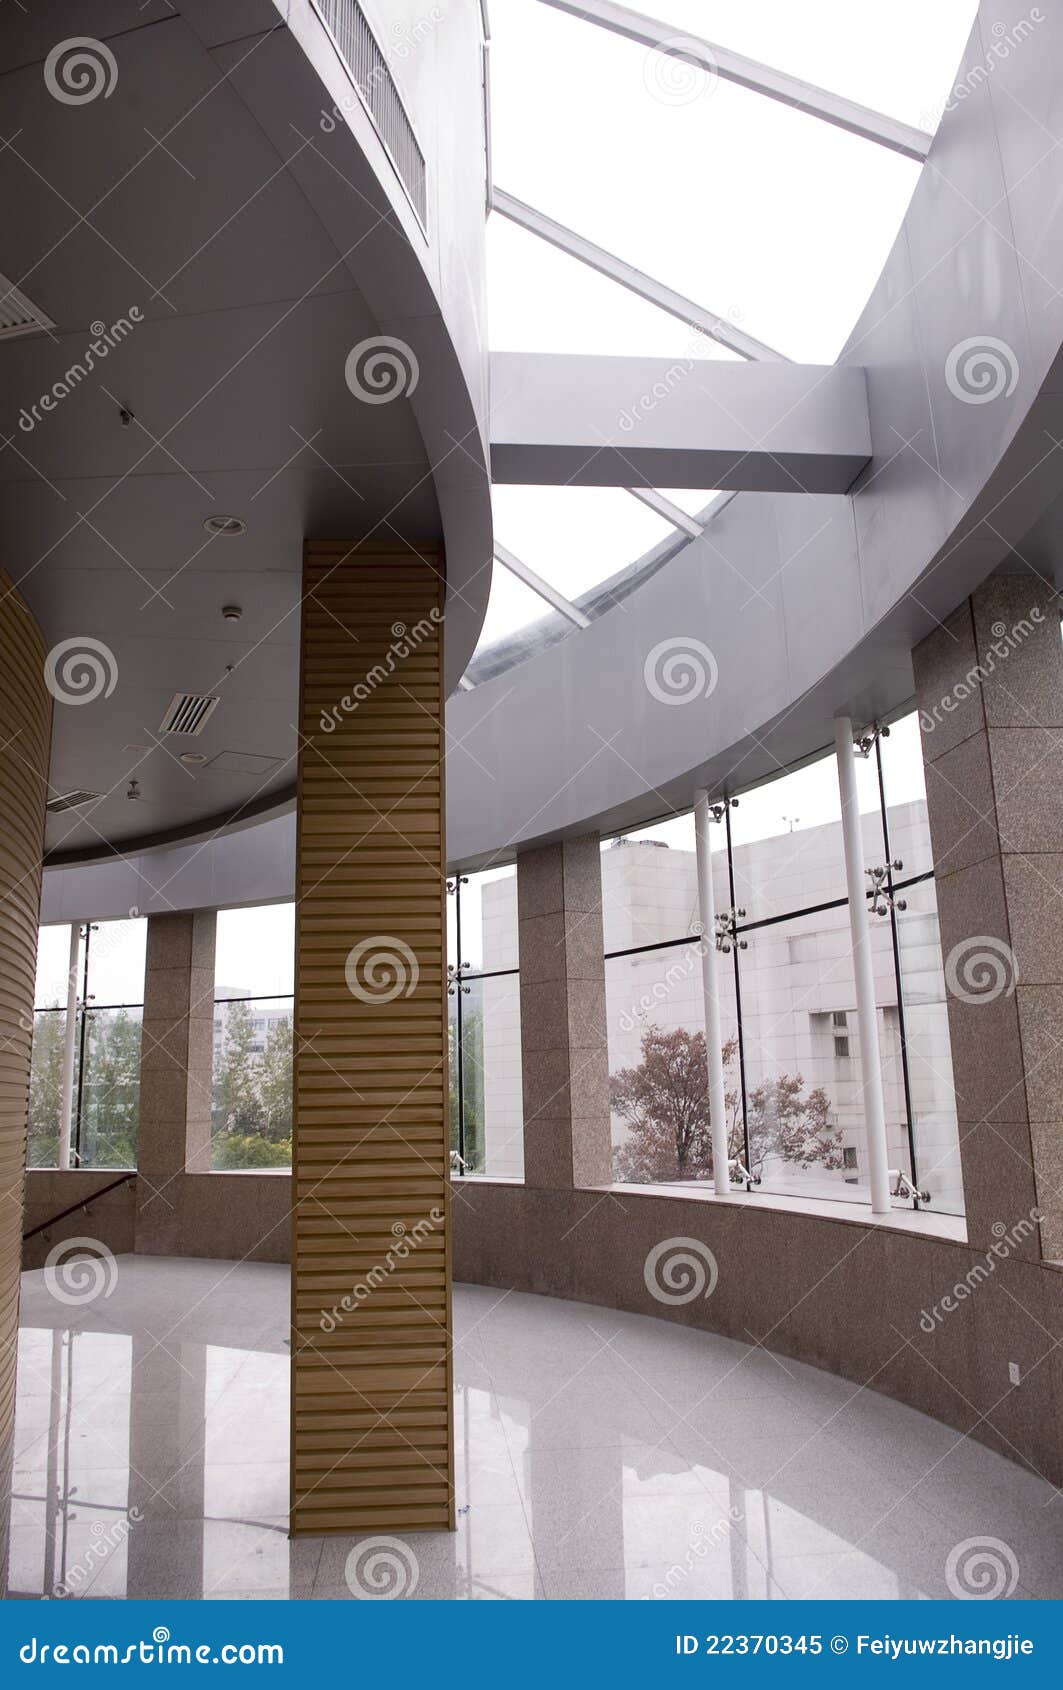 建筑走廊设计内部图片